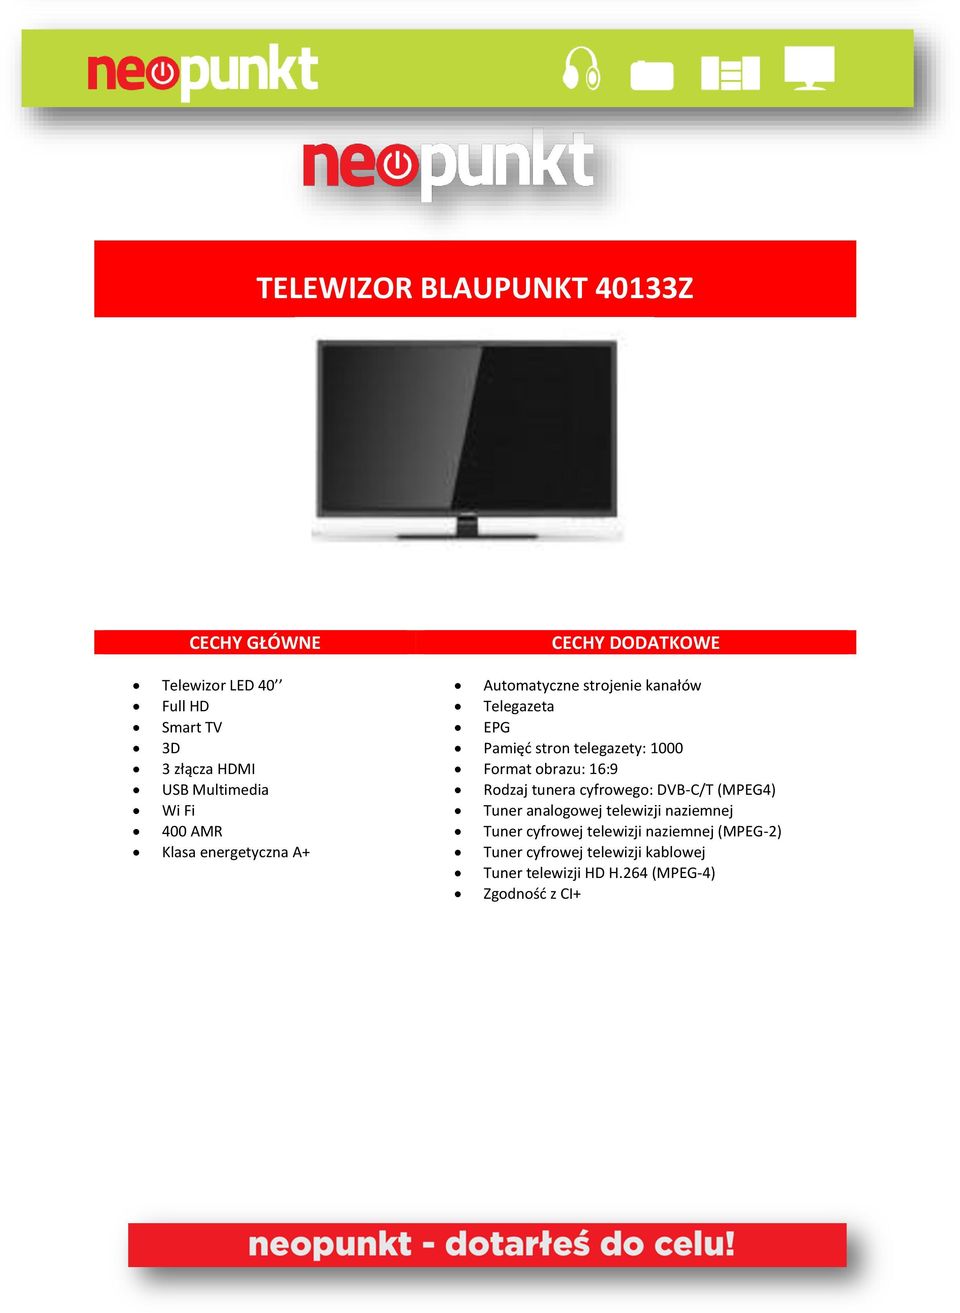 telegazety: 1000 Format obrazu: 16:9 Rodzaj tunera cyfrowego: DVB-C/T (MPEG4) Tuner analogowej telewizji naziemnej